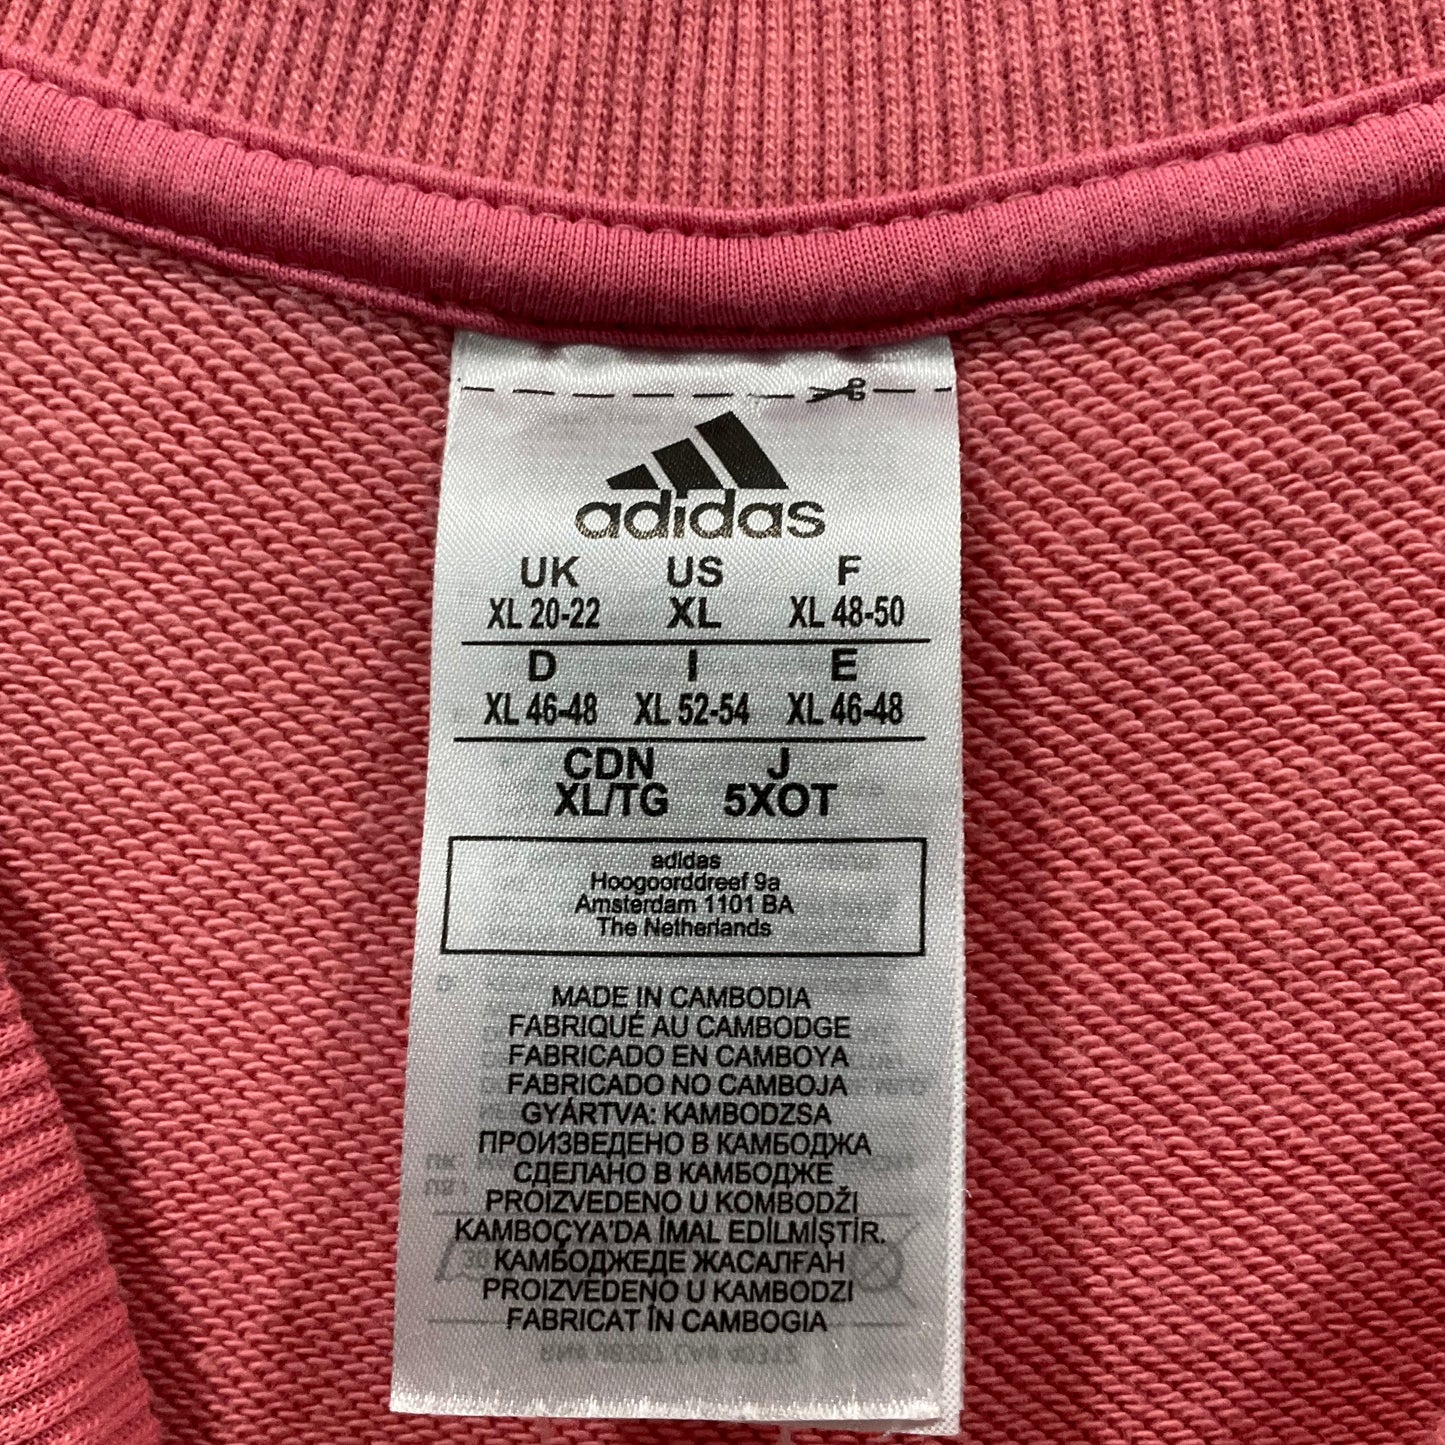 Sweatshirt Crewneck By Adidas  Size: Xl